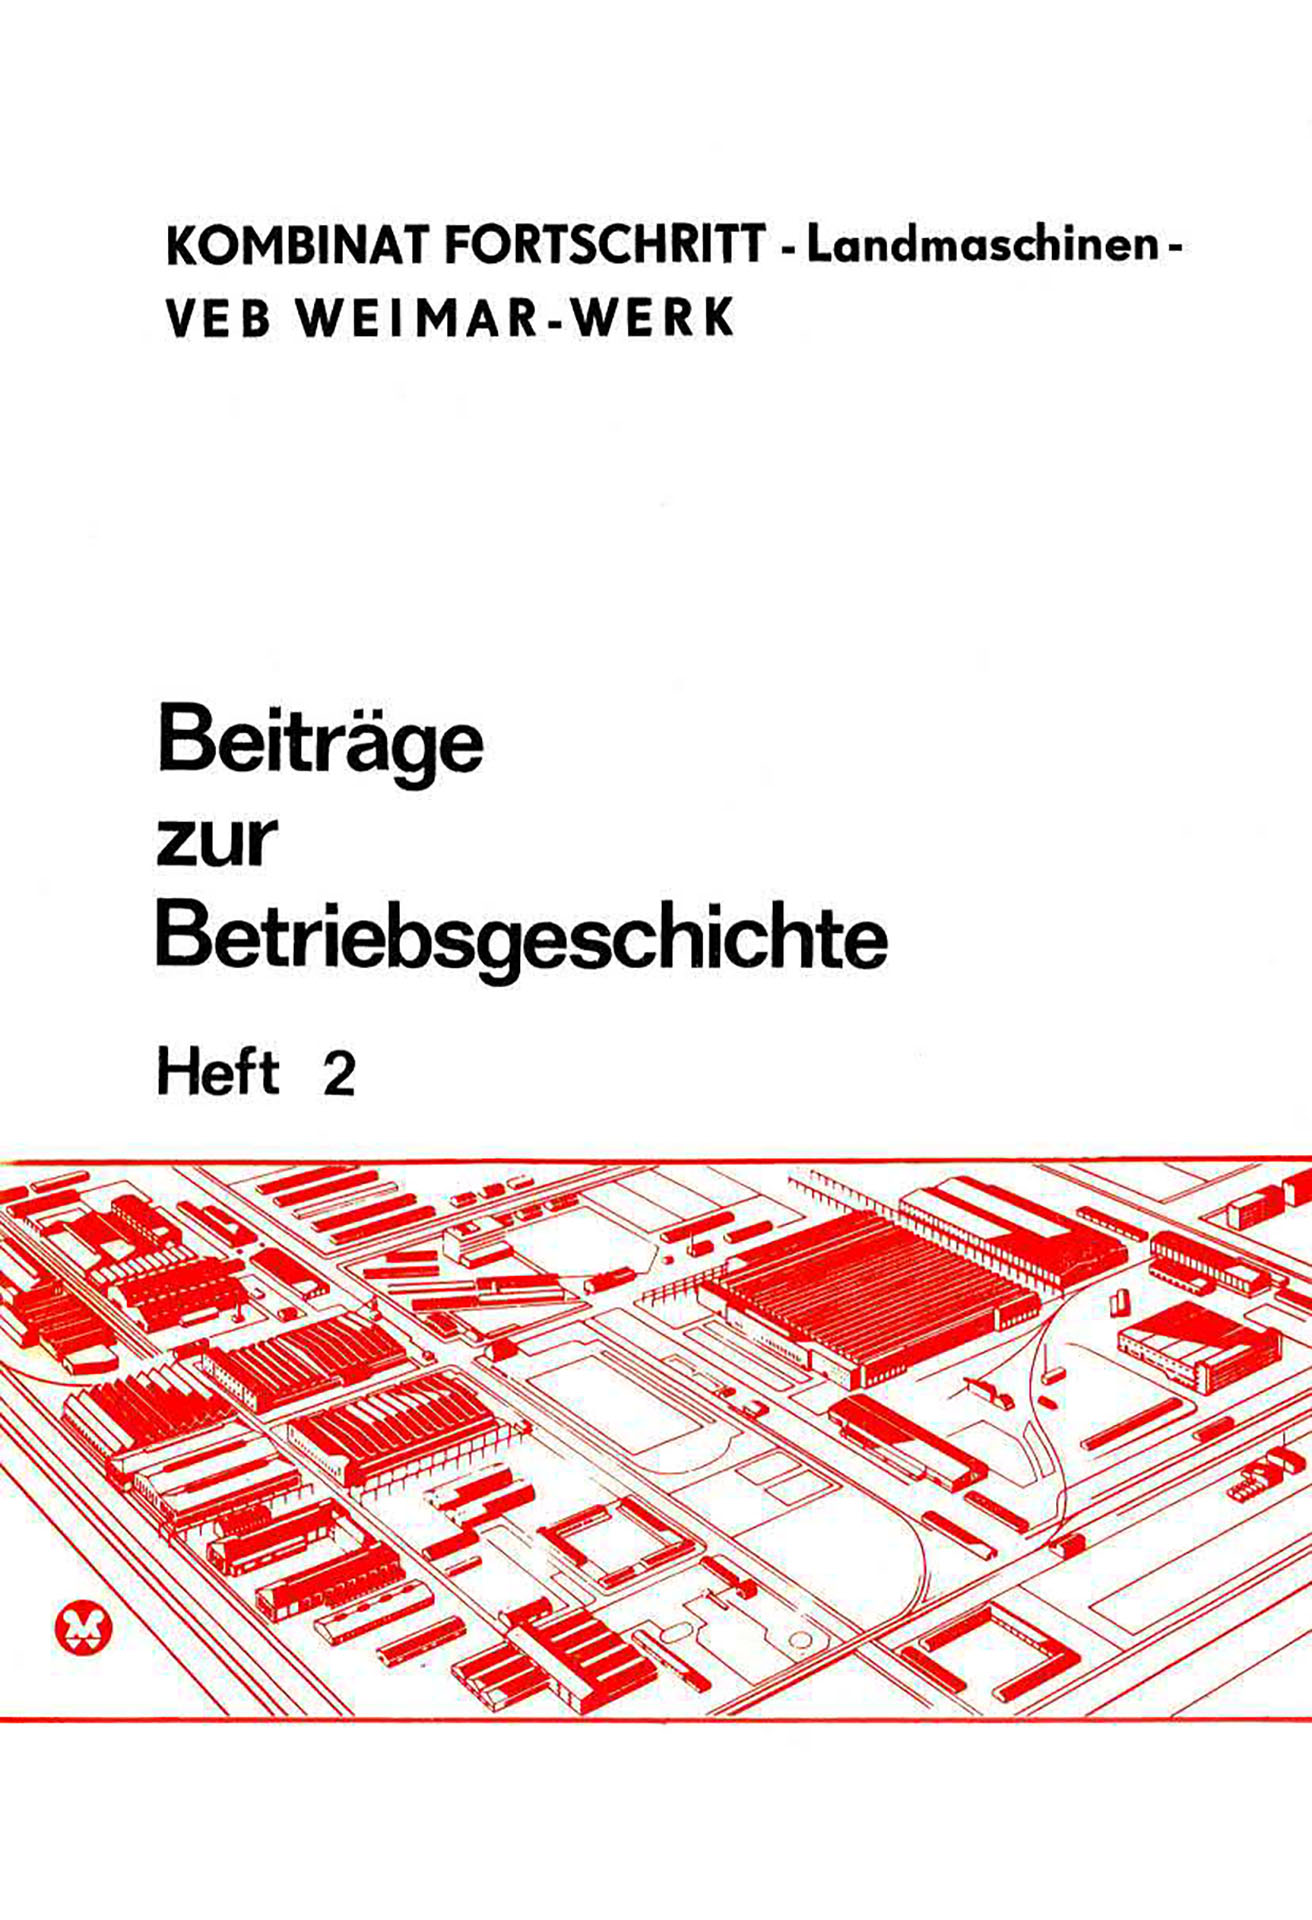 VEB Weimar-Werk - Beiträge zur Betriebsgeschichte - Teil 2 - Krahmer, Heinz / Klein, Andreas / Eckart, Karl / Straube, Joachim / Greyer, Wolfgang